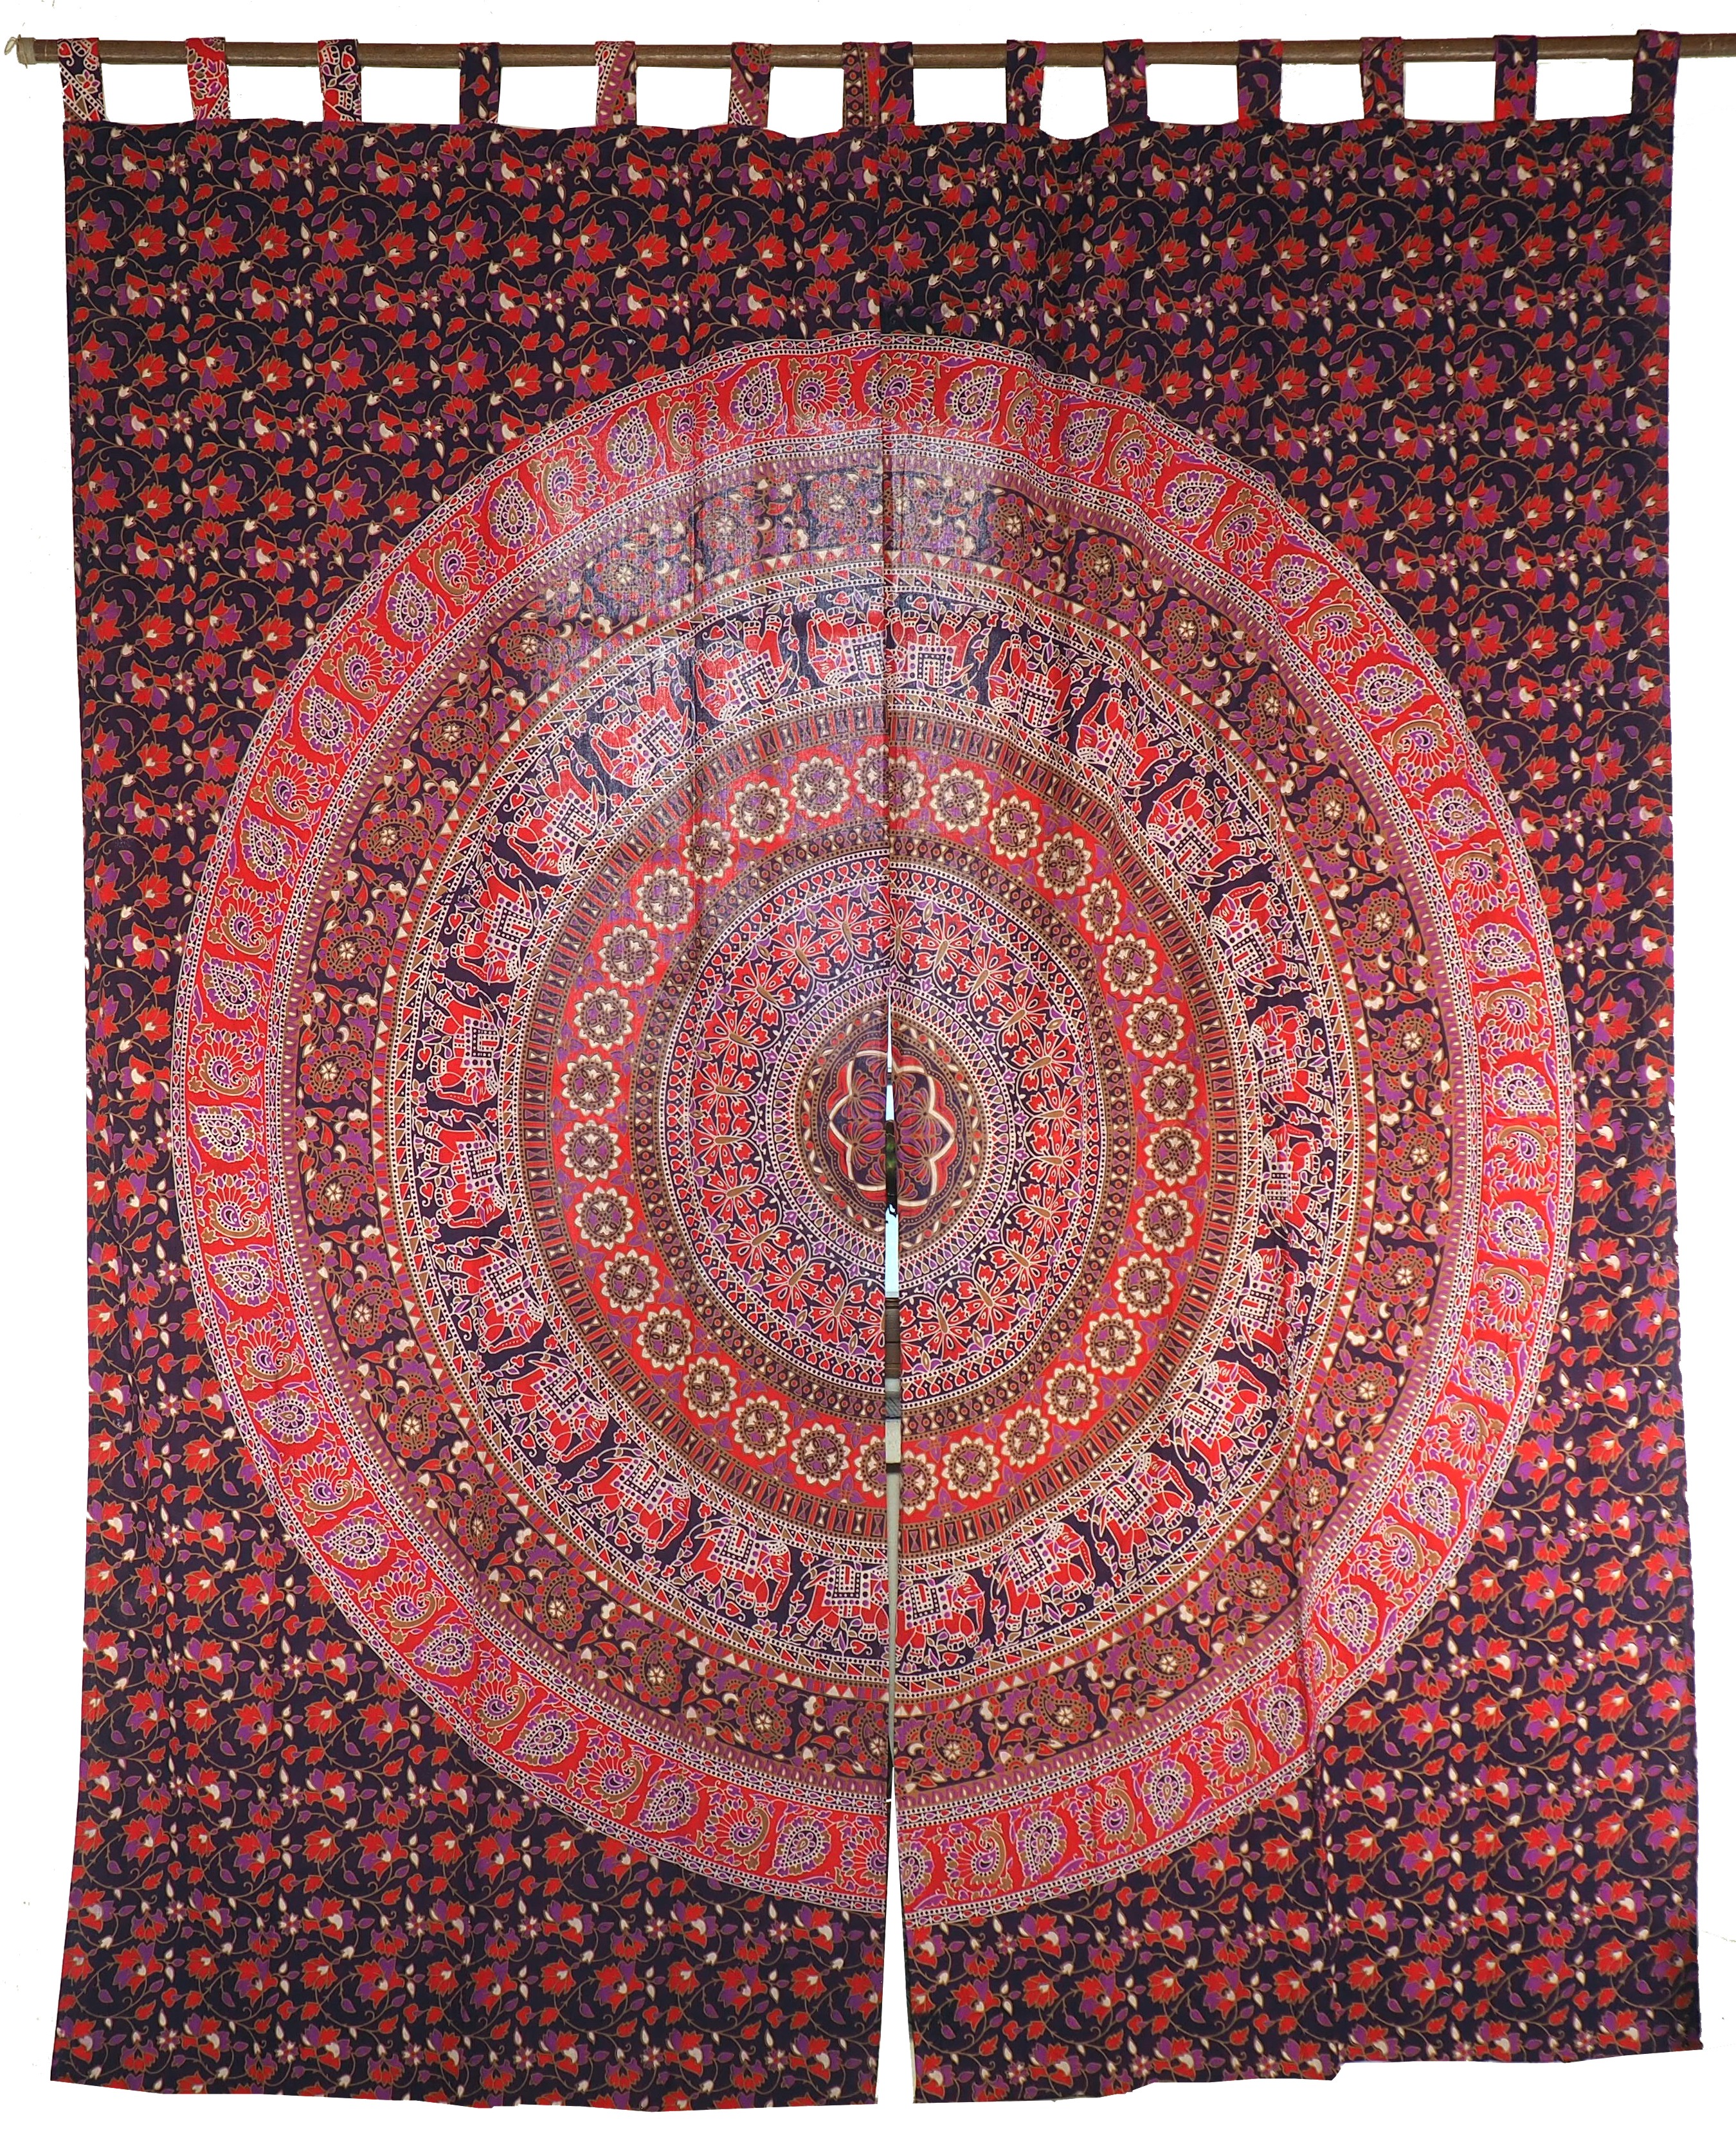 Paar 1 Motiv Vorhang-Gardine lila-rot Gardinen Vorhänge mit Mandala Schlaufen